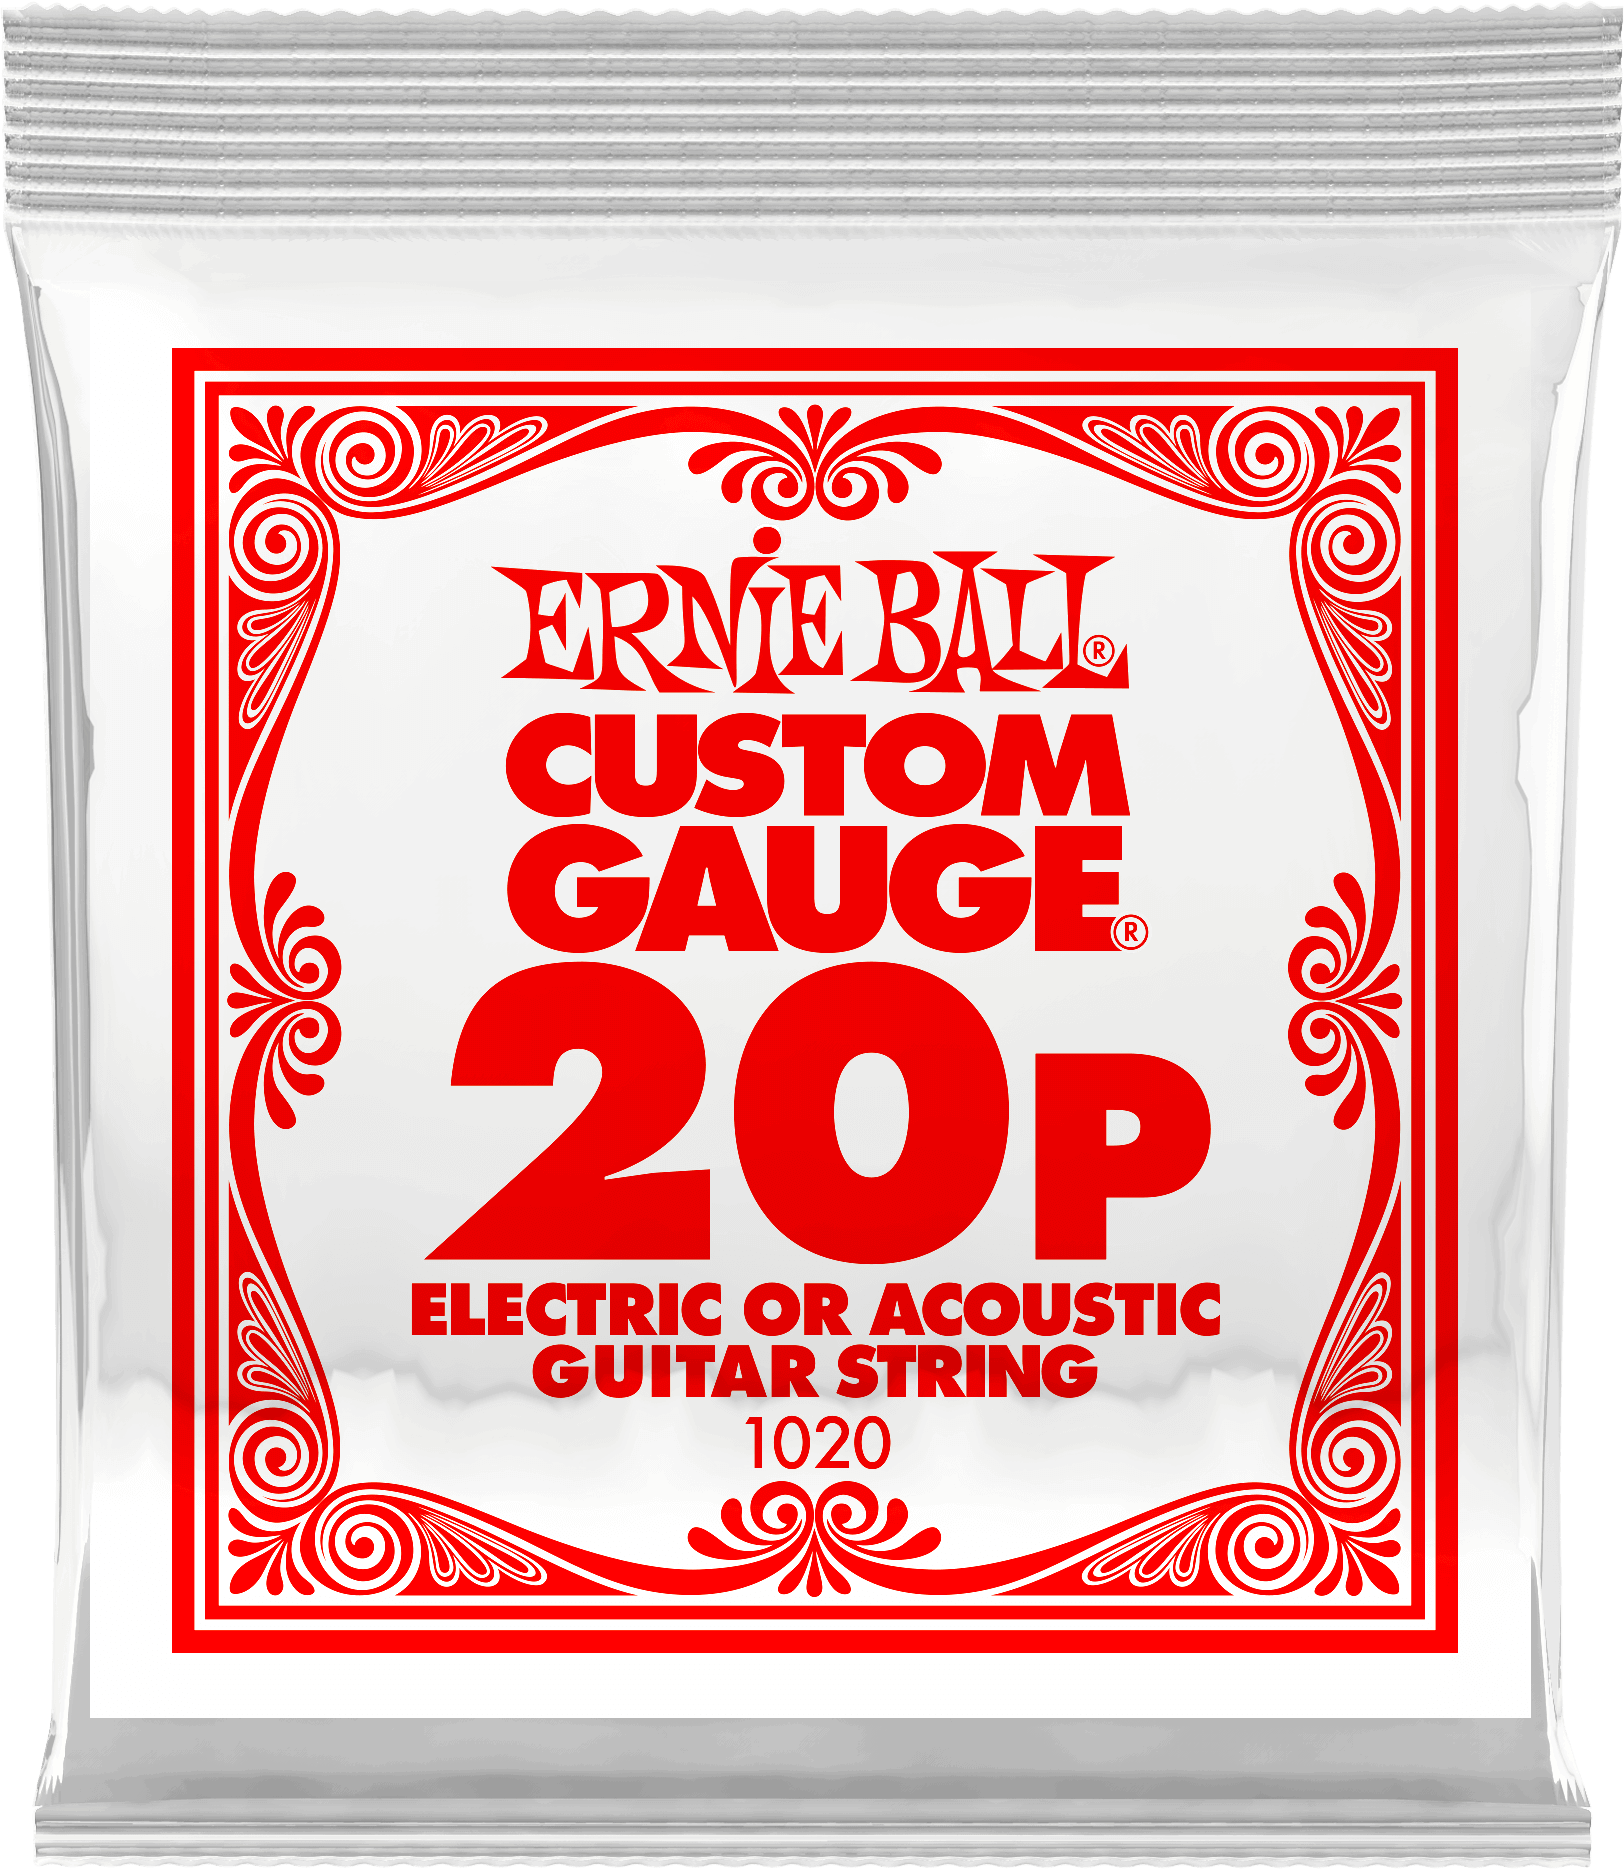 Струна для акустической и электрогитары Ernie Ball P01020 Custom gauge, сталь, калибр 20, Ernie Ball (Эрни Бол)